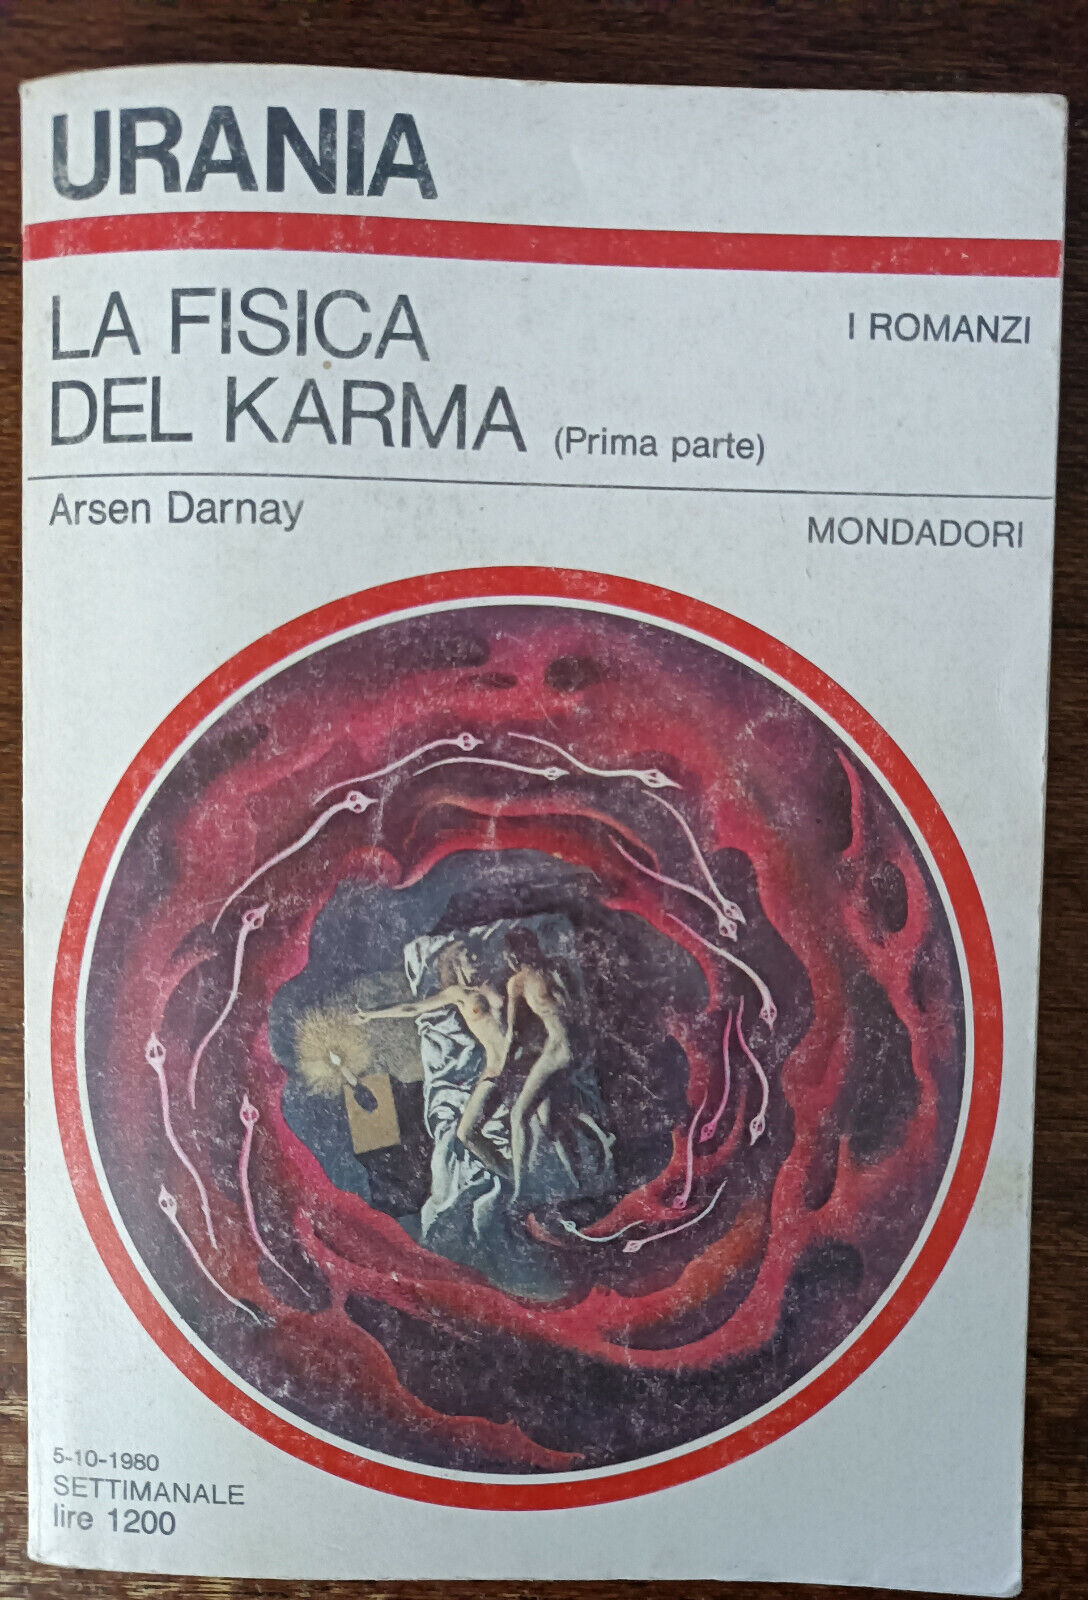 La fisica del karma (prima parte) - Arsen Darnay - Mondadori, 1980 - A